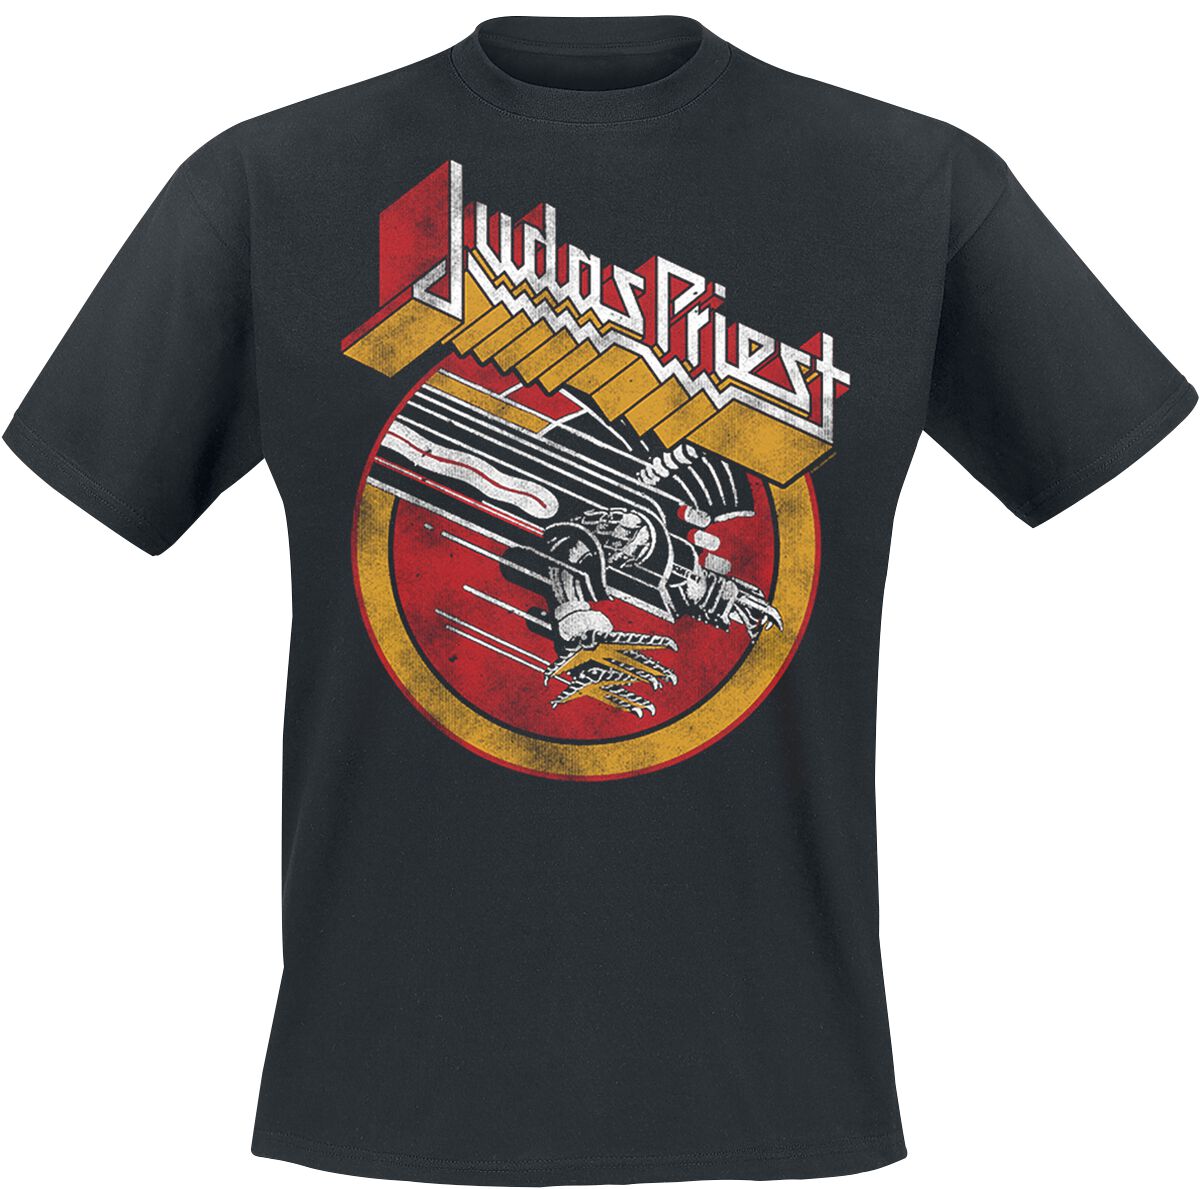 Judas Priest SFV Solid Circle Vintage T-Shirt black